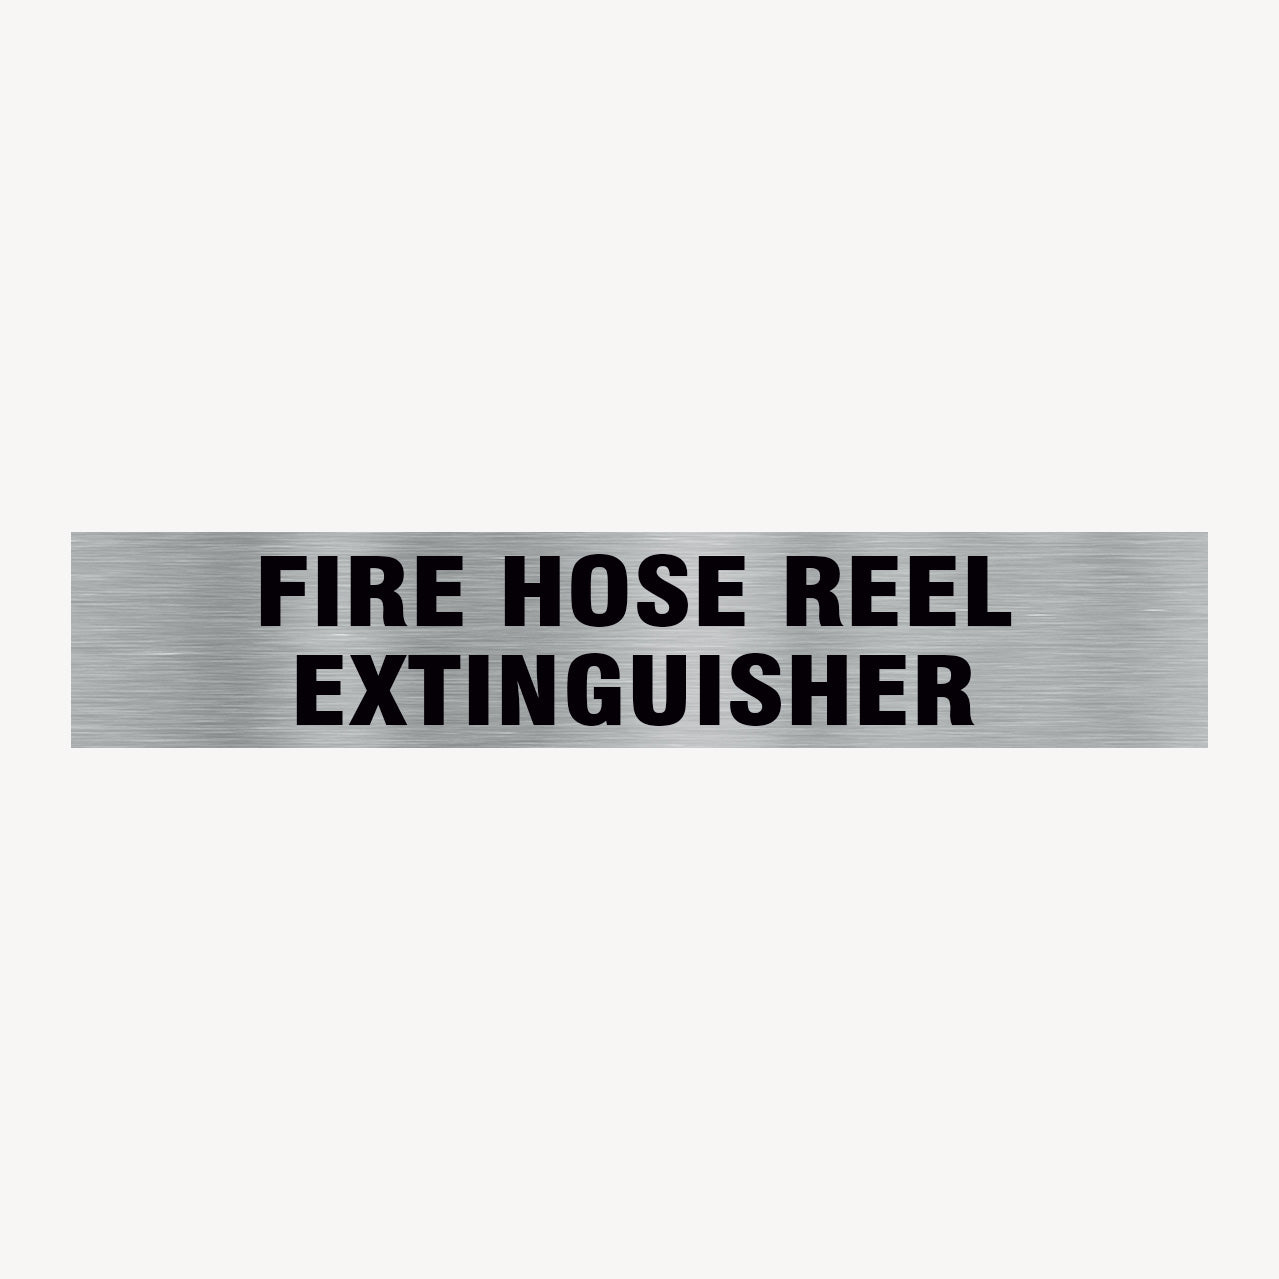 FIRE HOSE REEL/EXTINGUISHER SIGN - shop online - get signs